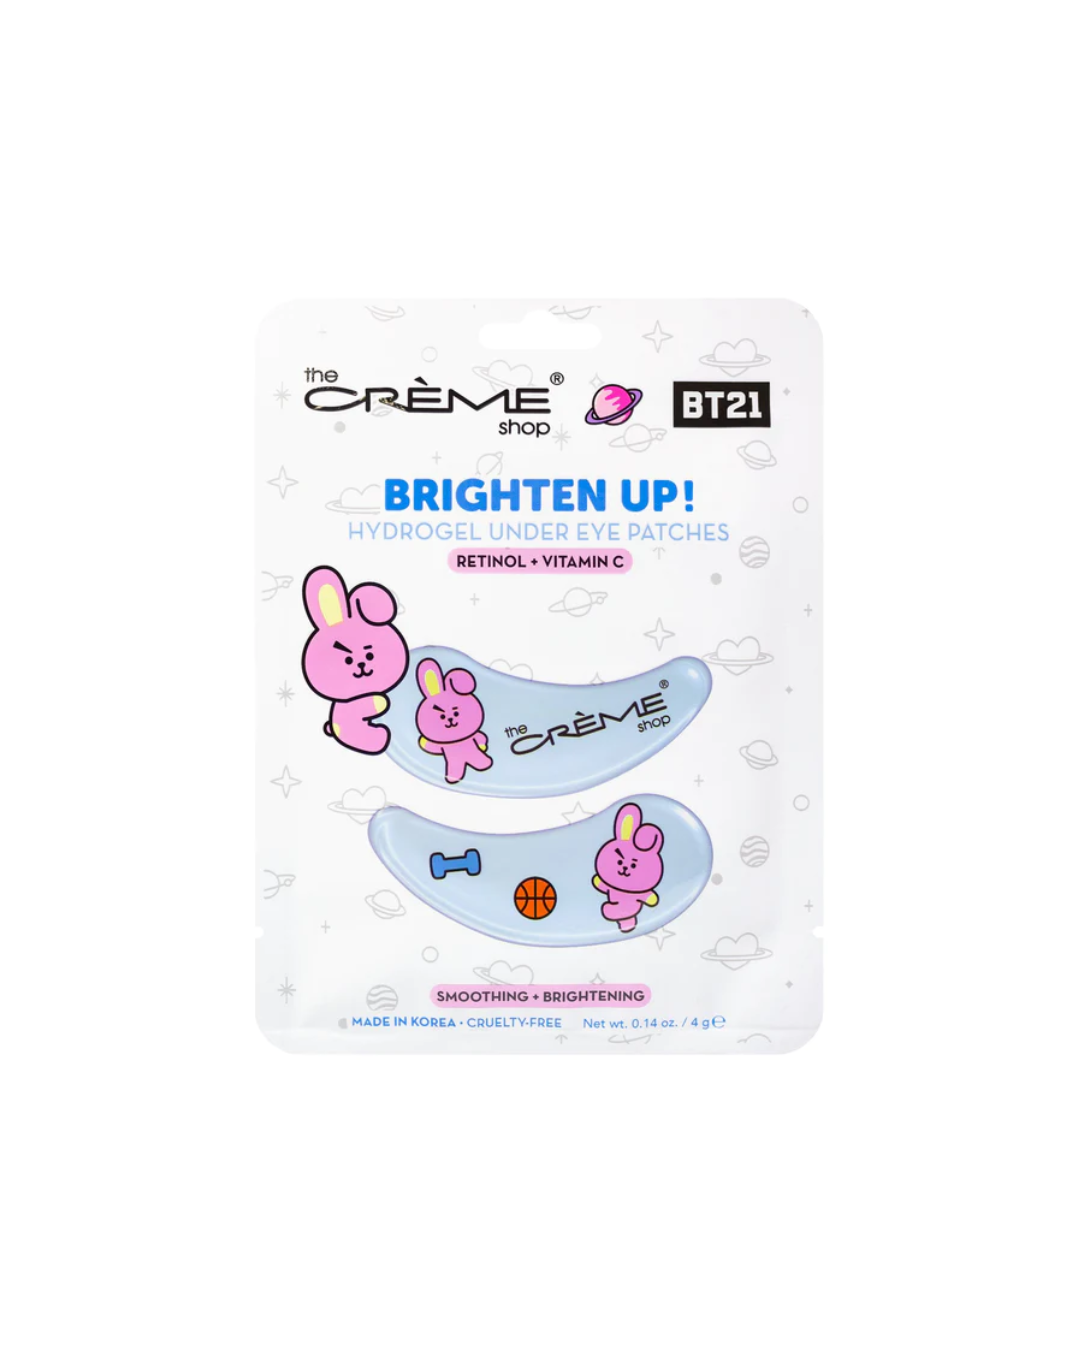 The Creme Shop x BT21 Hydrogel Undereye Patch | Brighten Up